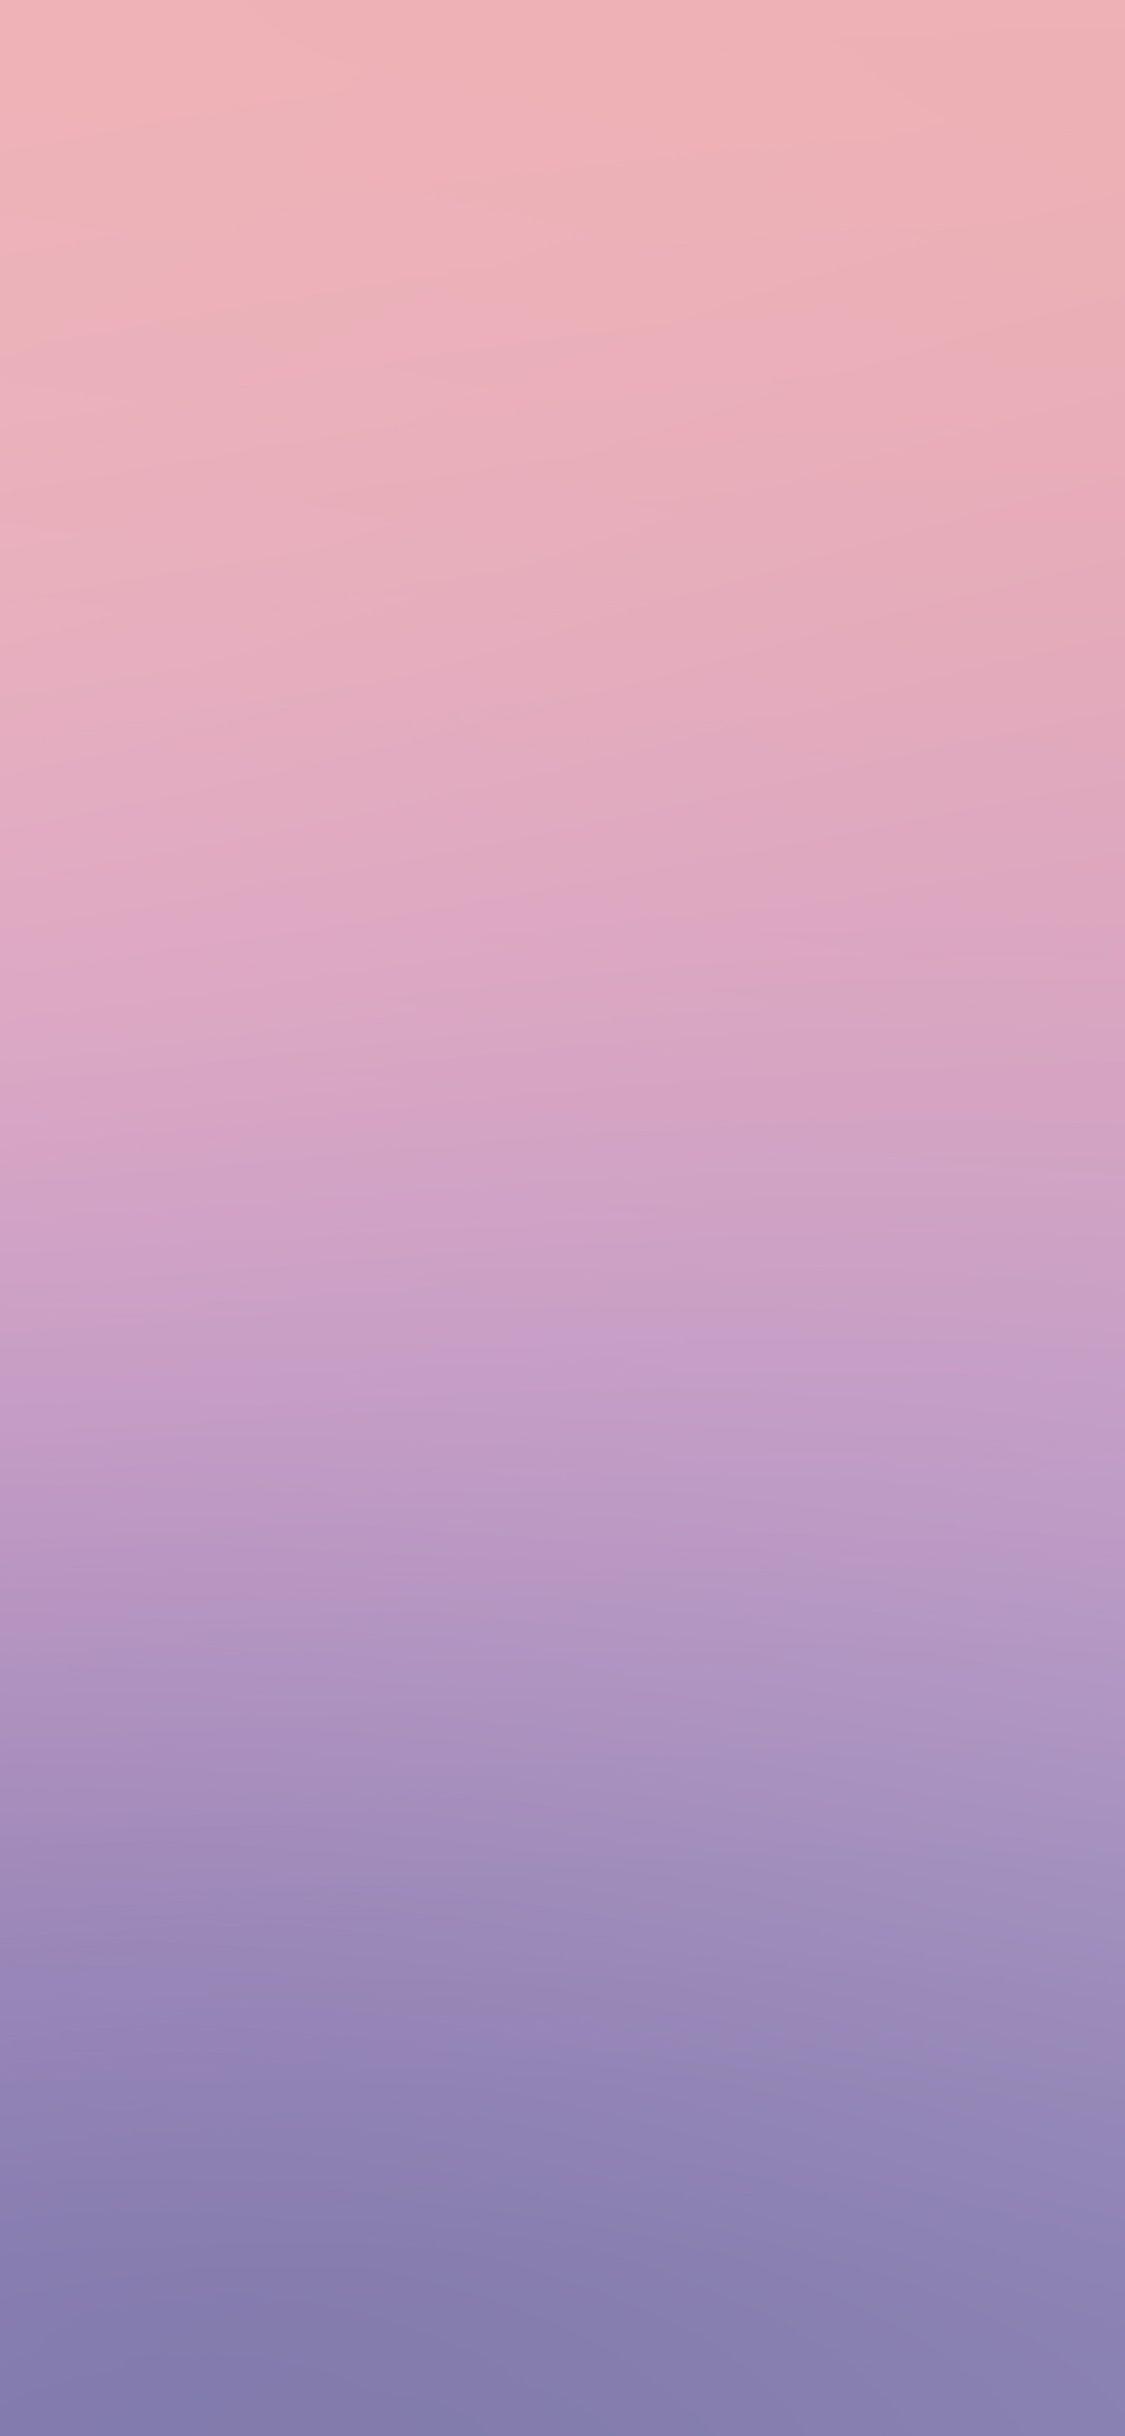 Hình nền iPhone X 1125x2436.  hồng xanh tím